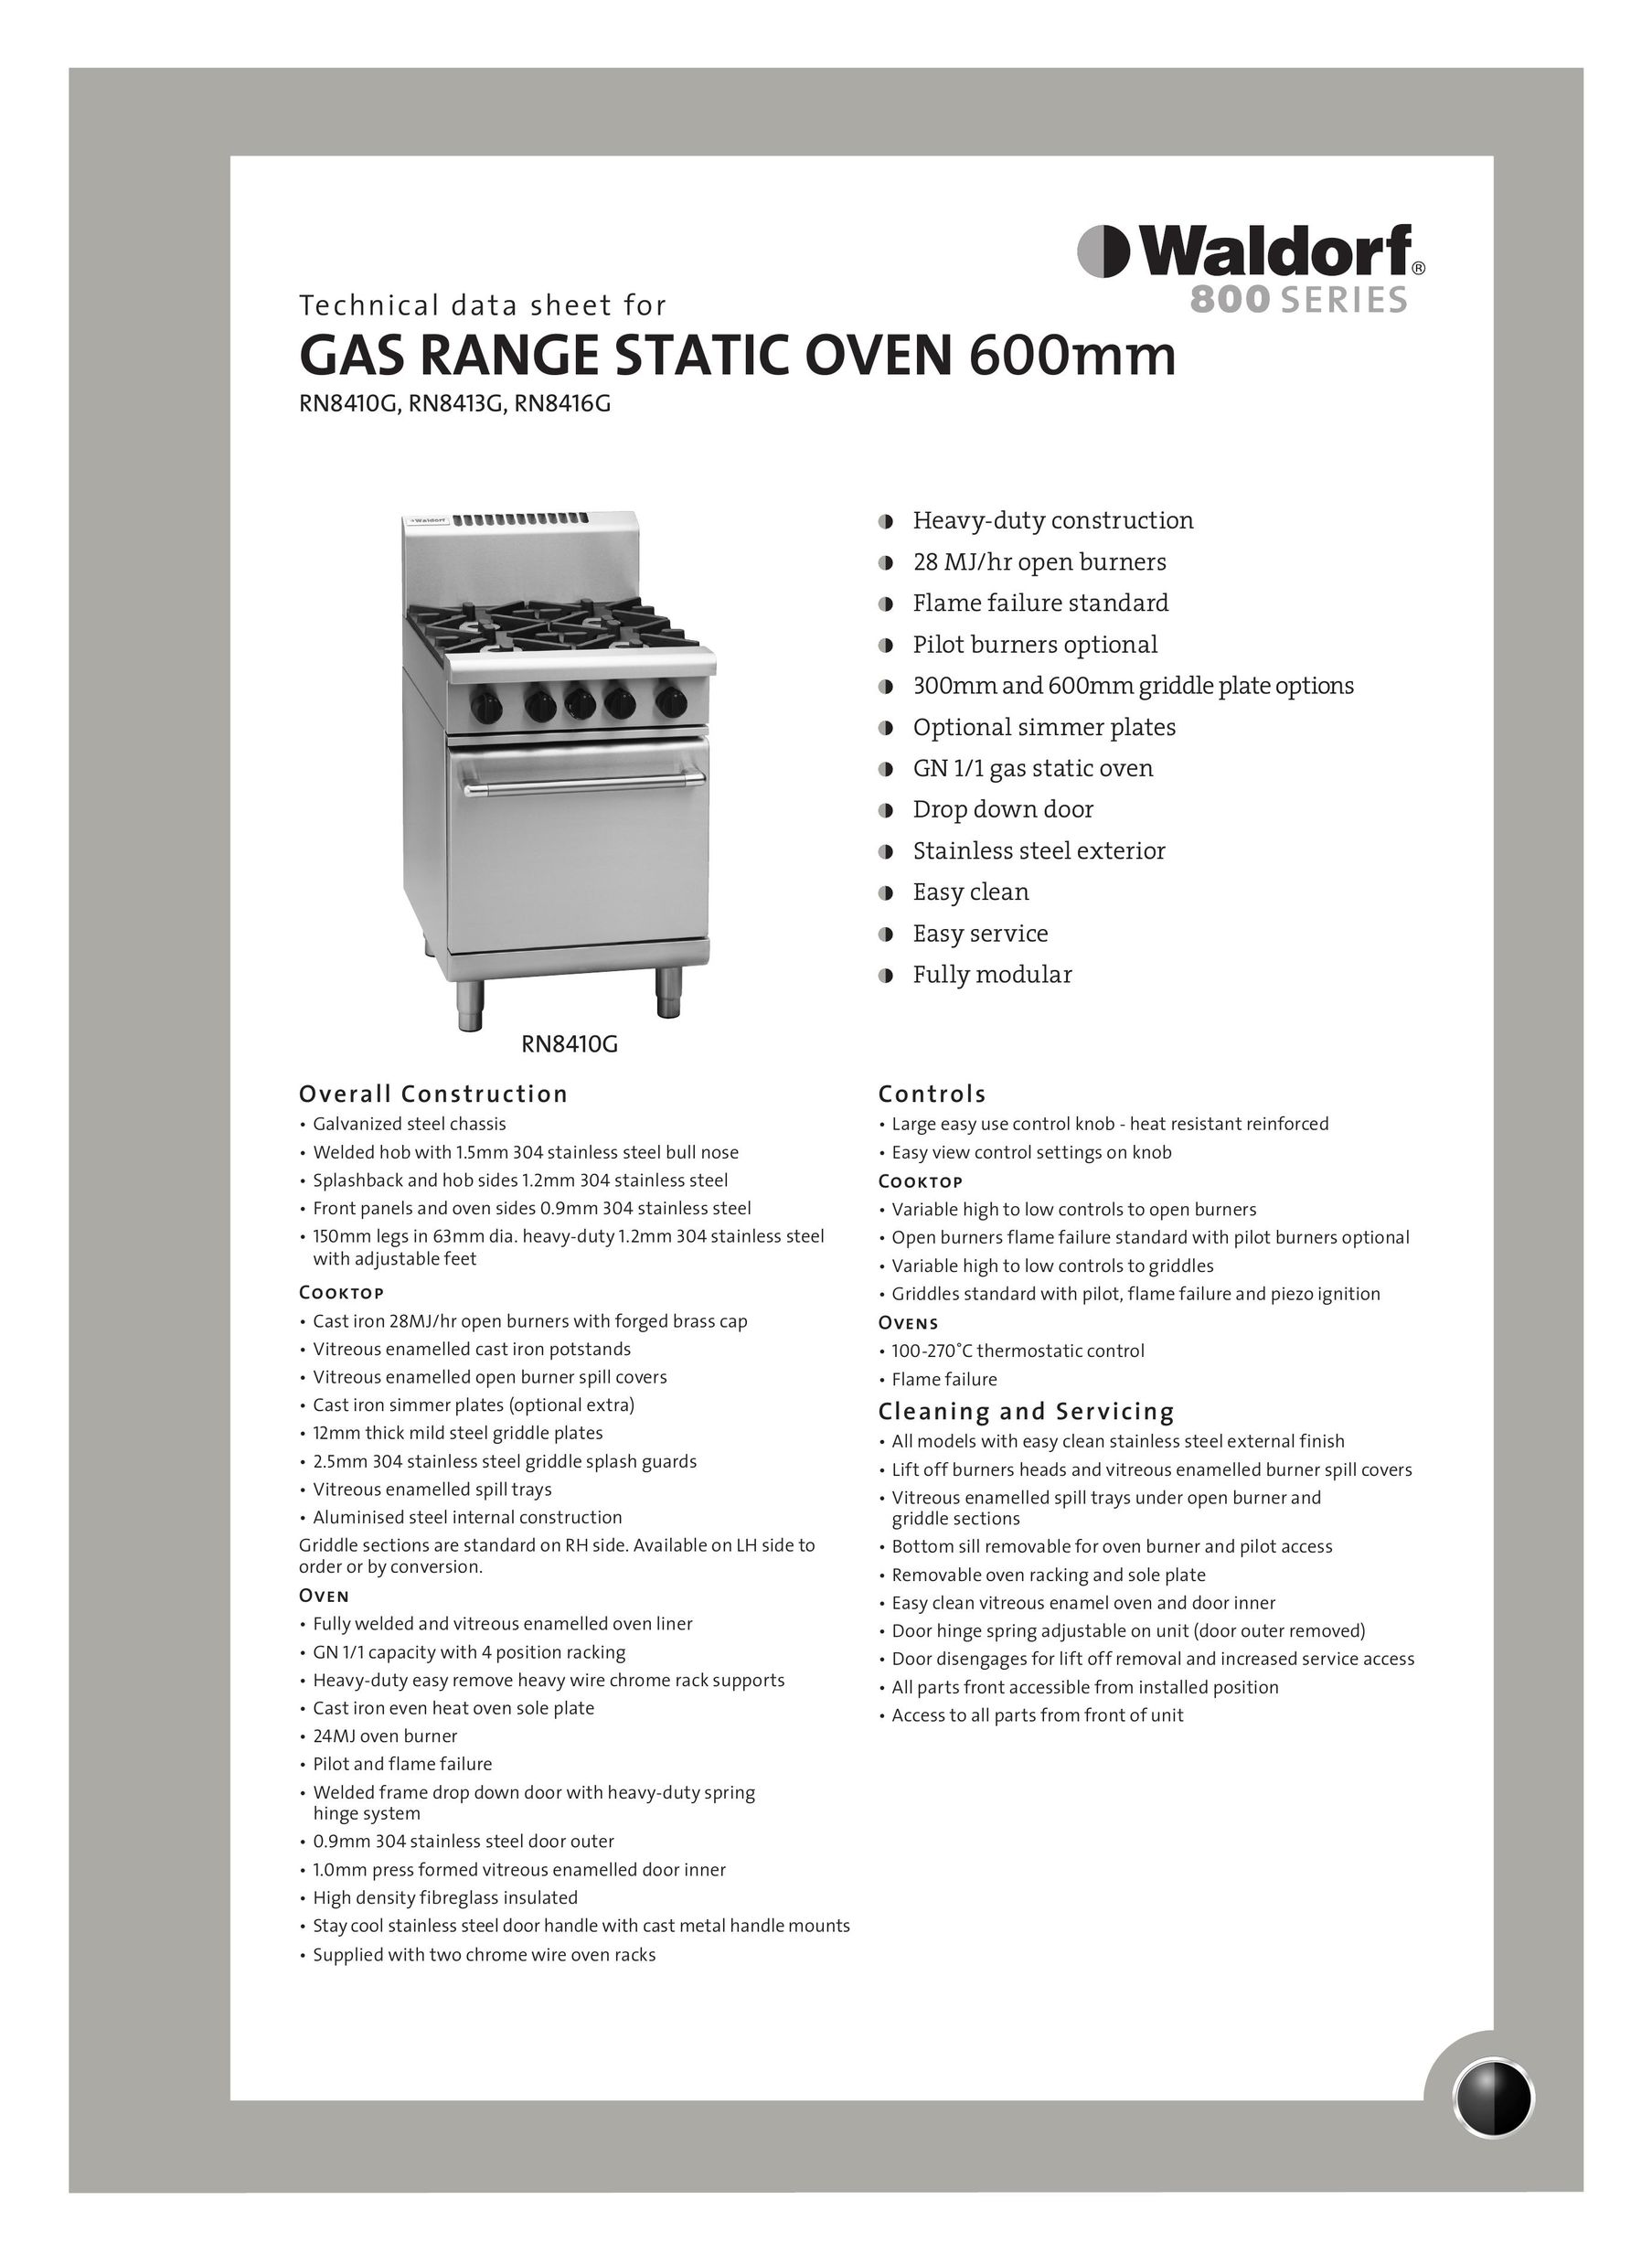 Moffat RN8416G Range User Manual